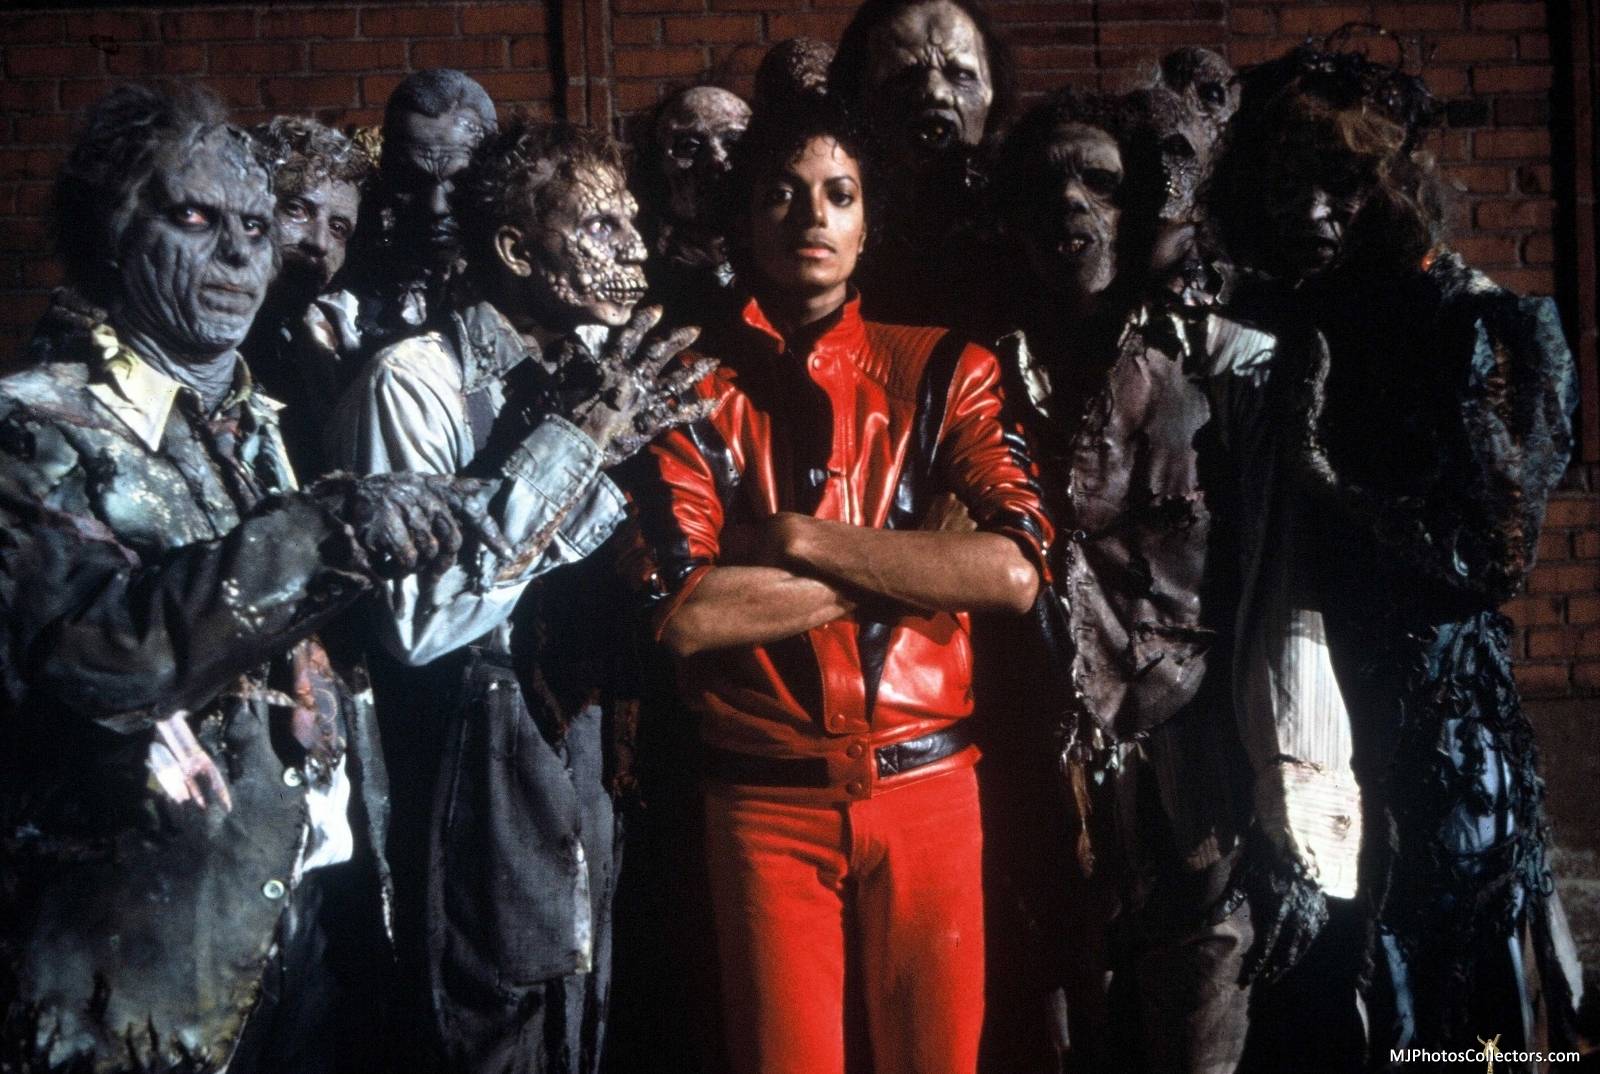 image For > Thriller Michael Jackson Wallpaper